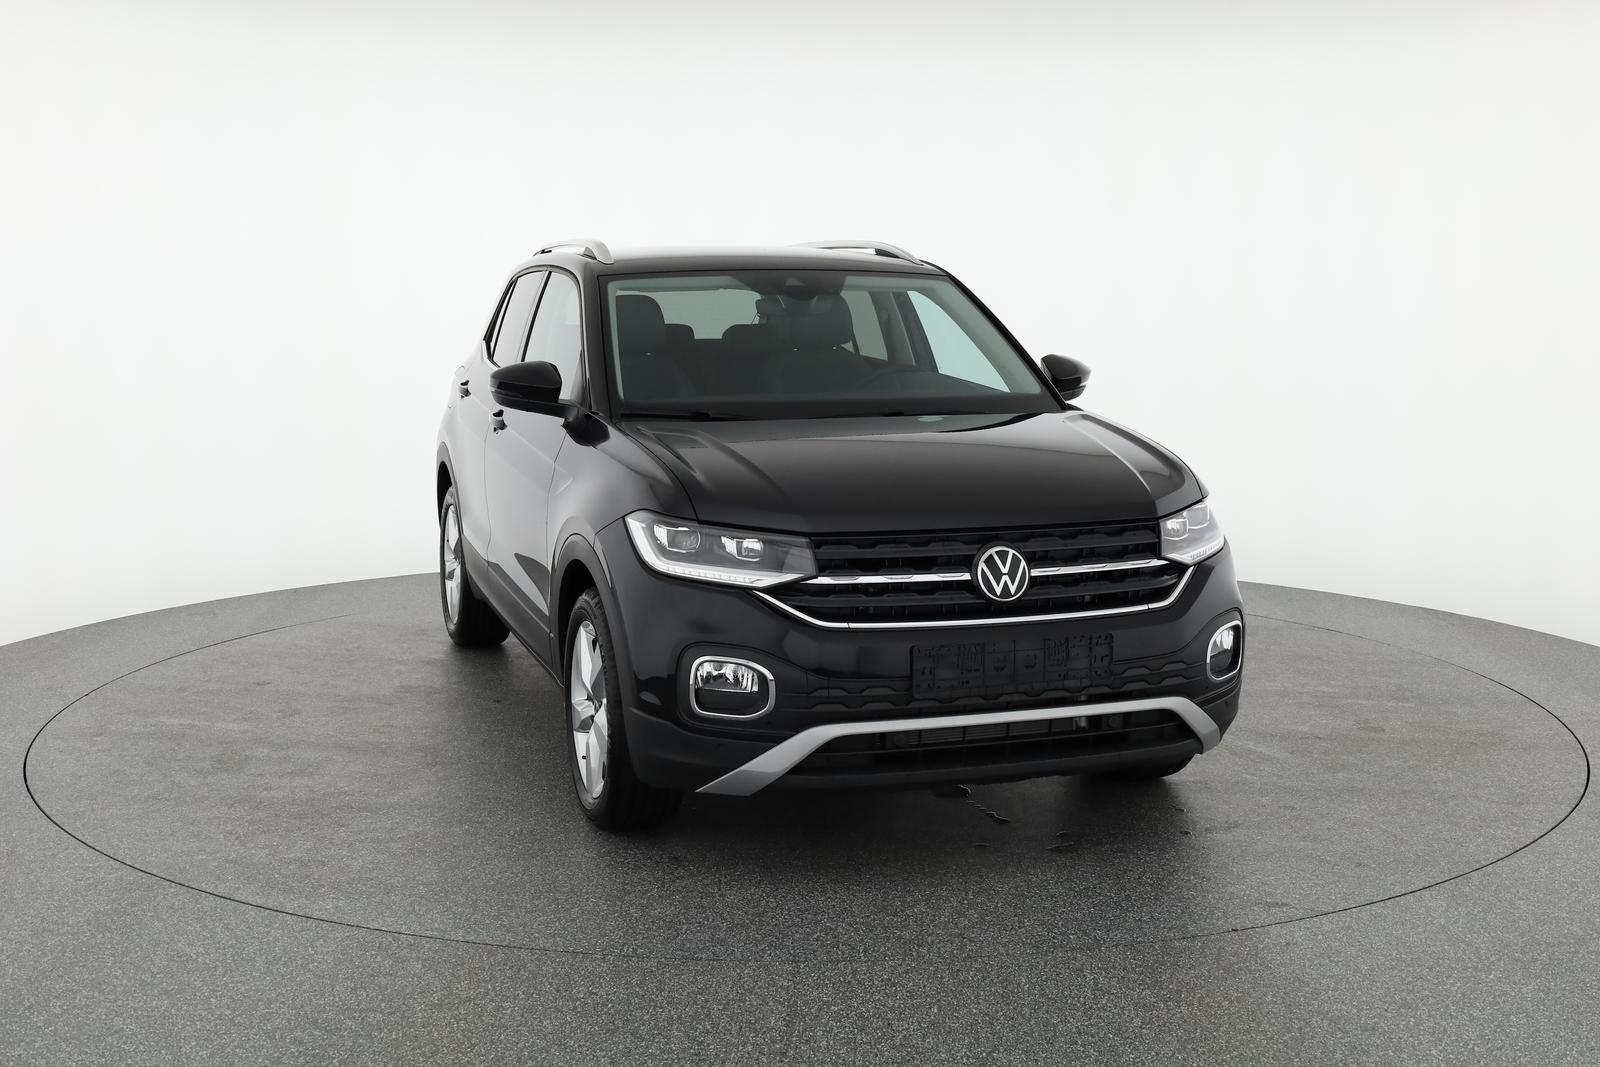 Volkswagen T-Cross Style 1.0 TSI Style, Navi, ACC, Kamera, 4-J Garantie   Fahrzeugangebot zu europäischen Bestpreisen mit Rabatt, günstiger kaufen